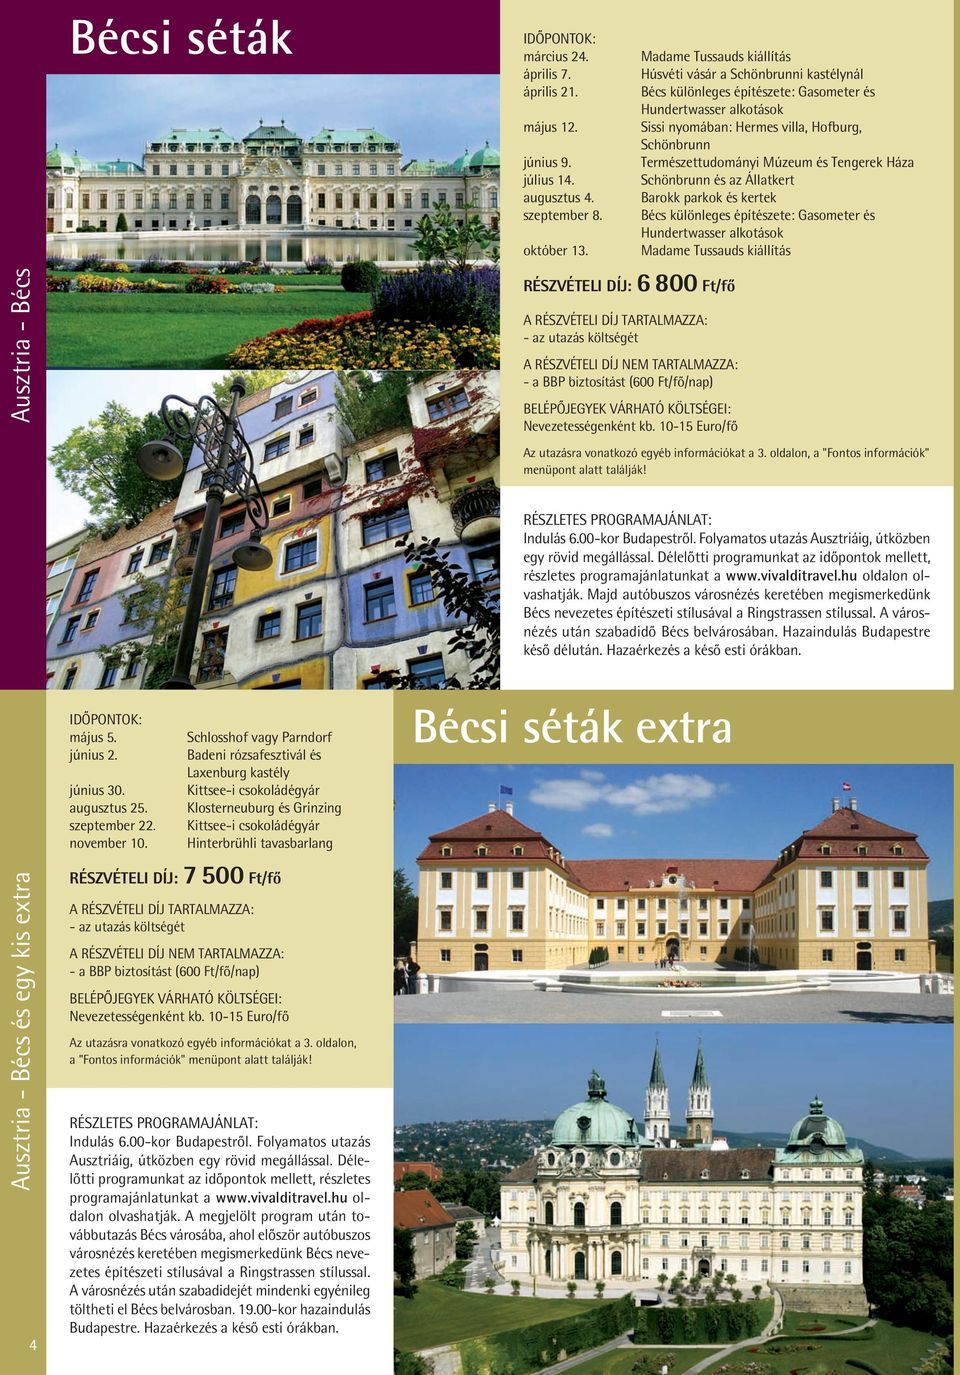 Múzeum és Tengerek Háza Schönbrunn és az Állatkert Barokk parkok és kertek Bécs különleges építészete: Gasometer és Hundertwasser alkotások Madame Tussauds kiállítás Ausztria - Bécs RÉSZVÉTELI DÍJ: 6